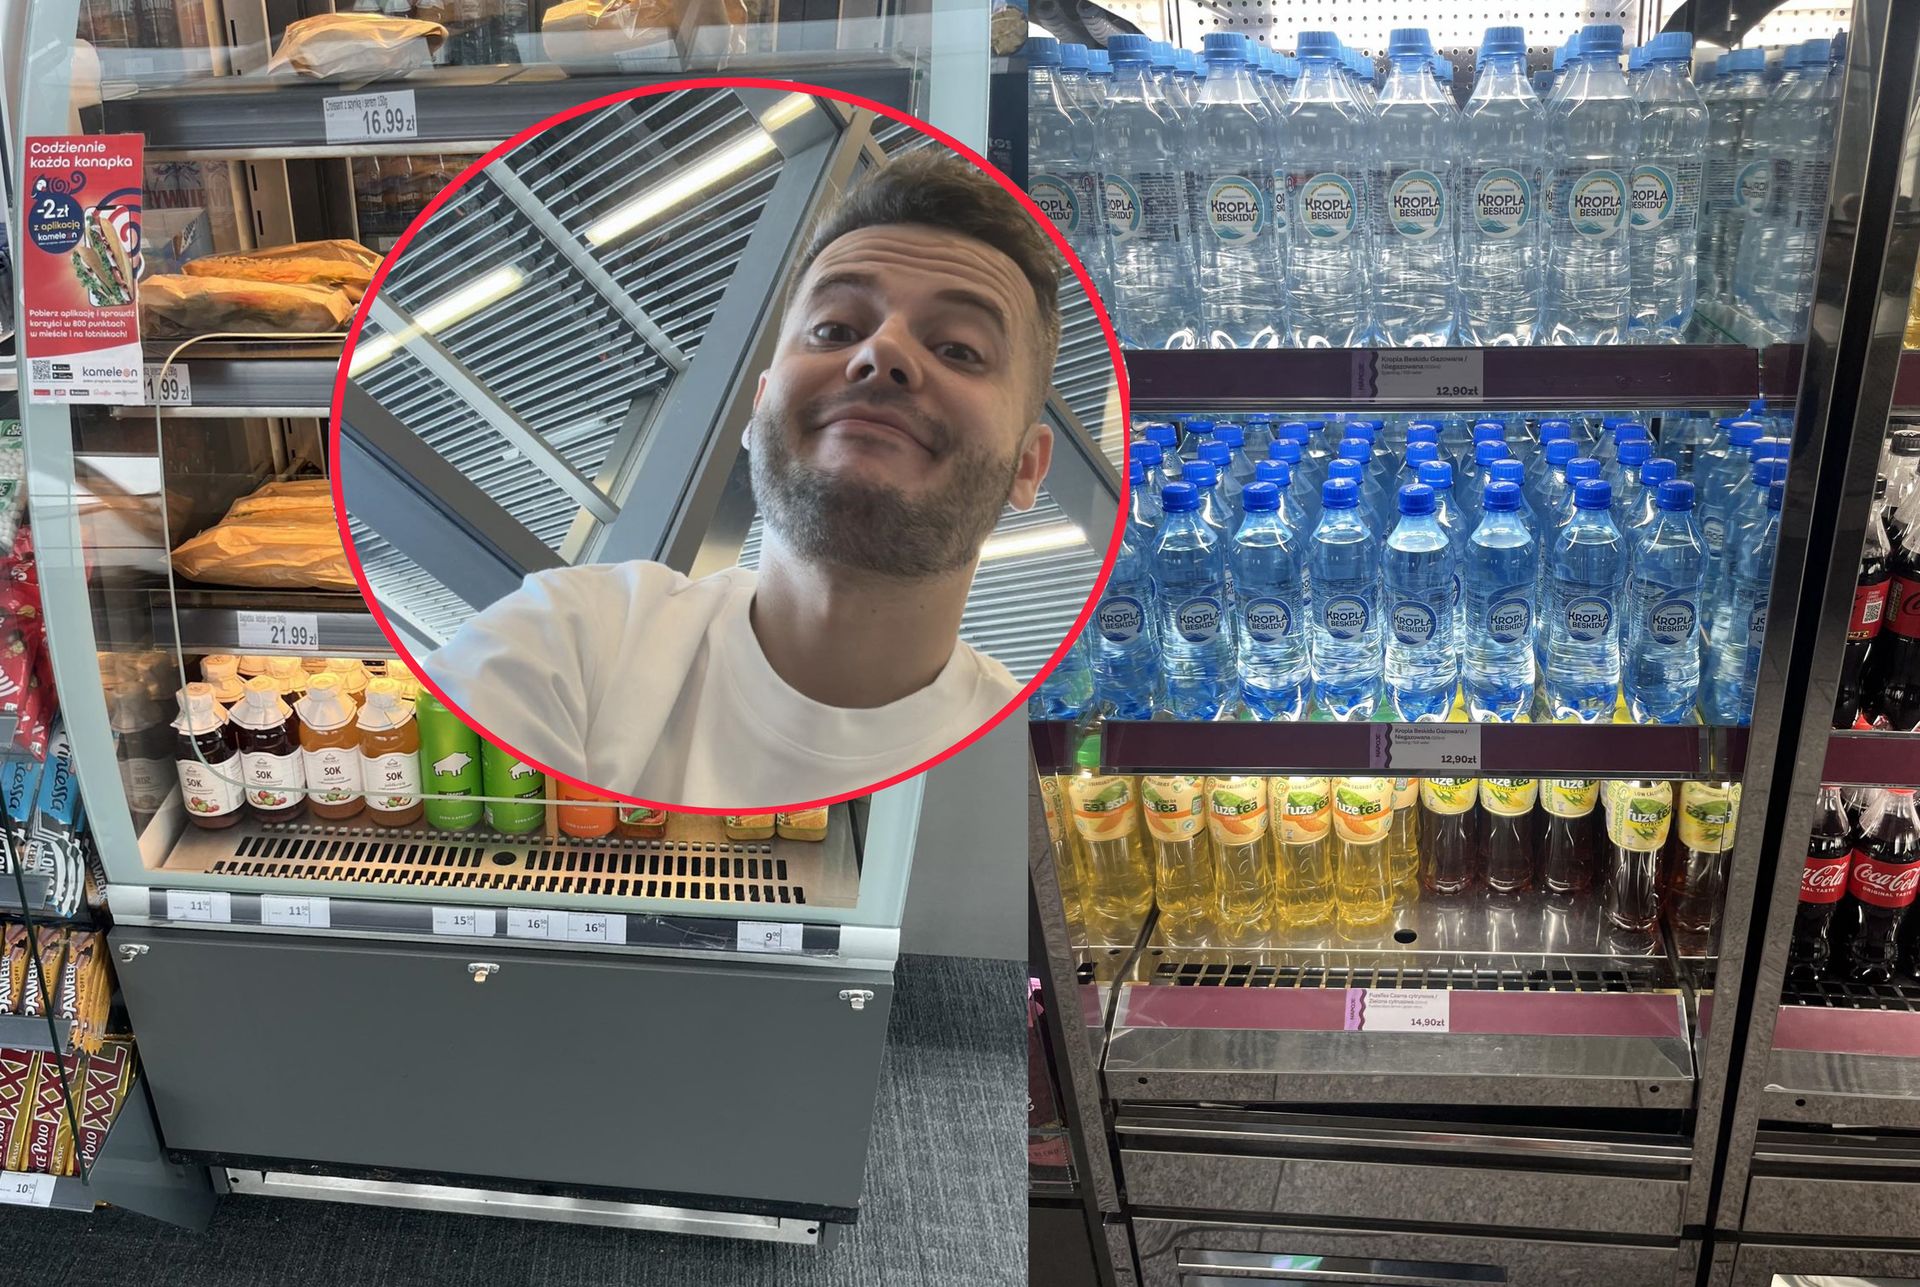 Pokazał zdjęcie z polskiego lotniska. "Lepiej kupić wódkę niż kanapkę"